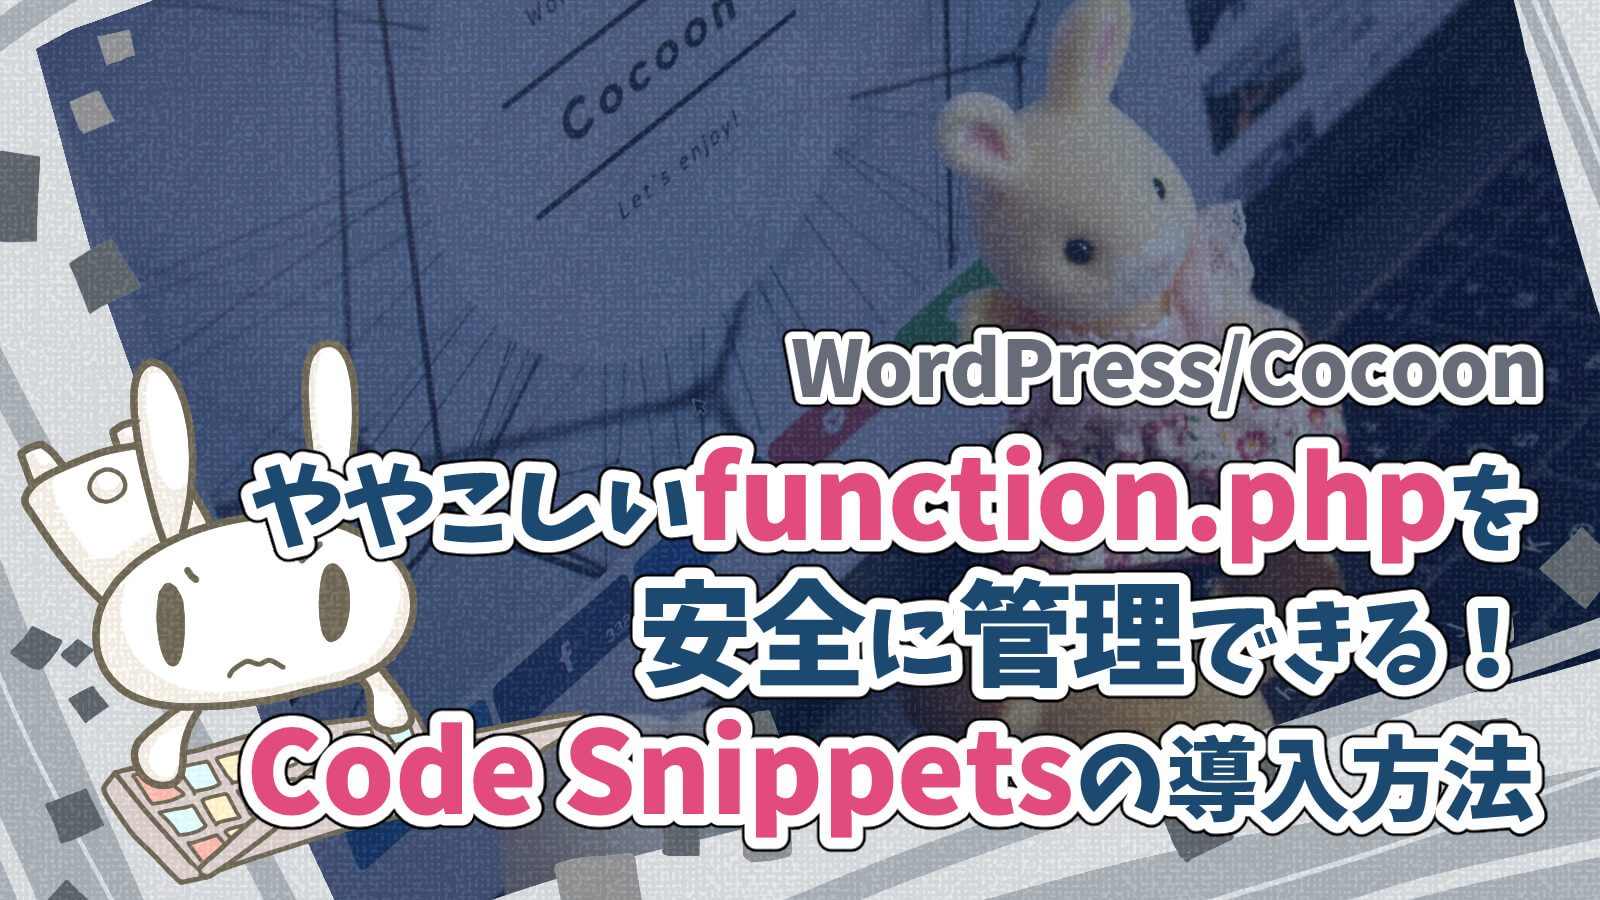 ワードプレスプラグインcode snippetsエラー通知コードスニペット